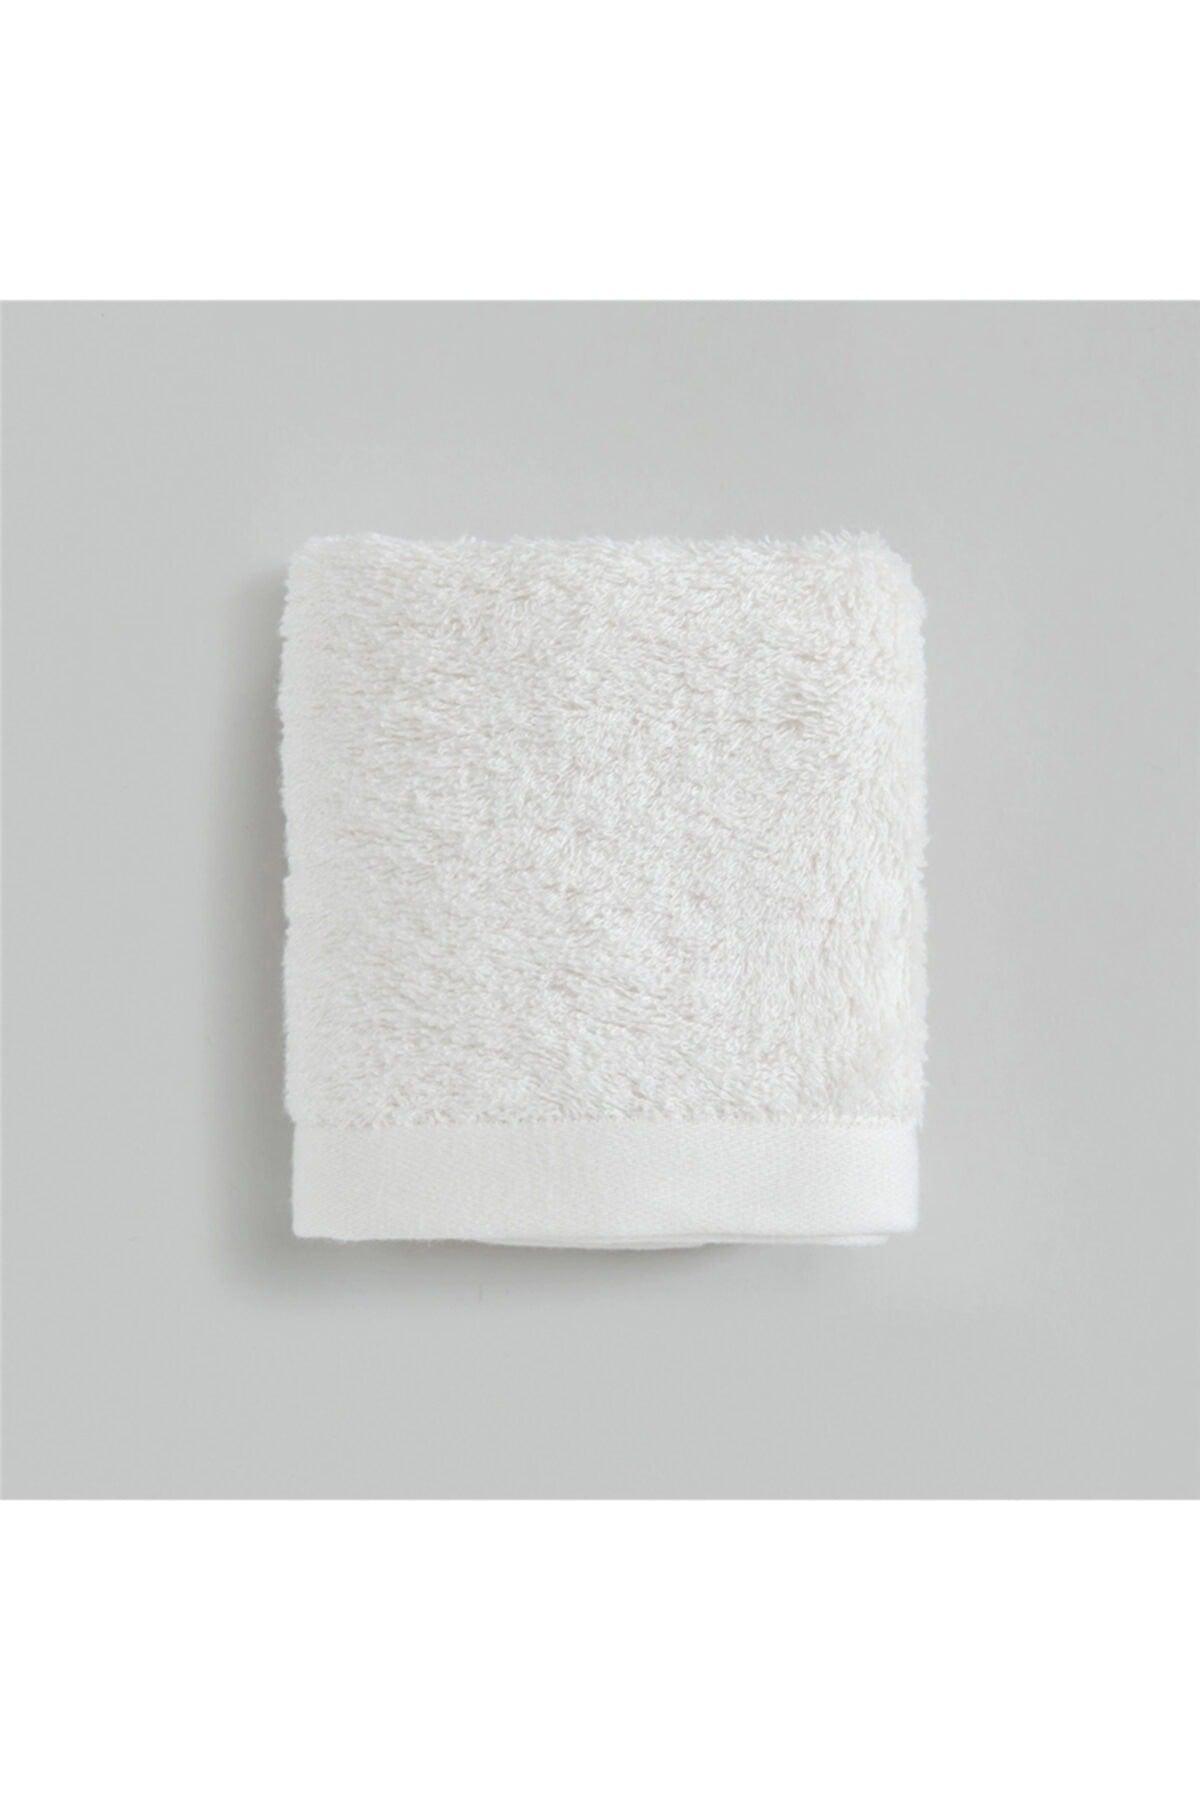 Solid Hand Towel 30x50 Cm Ecru - Swordslife